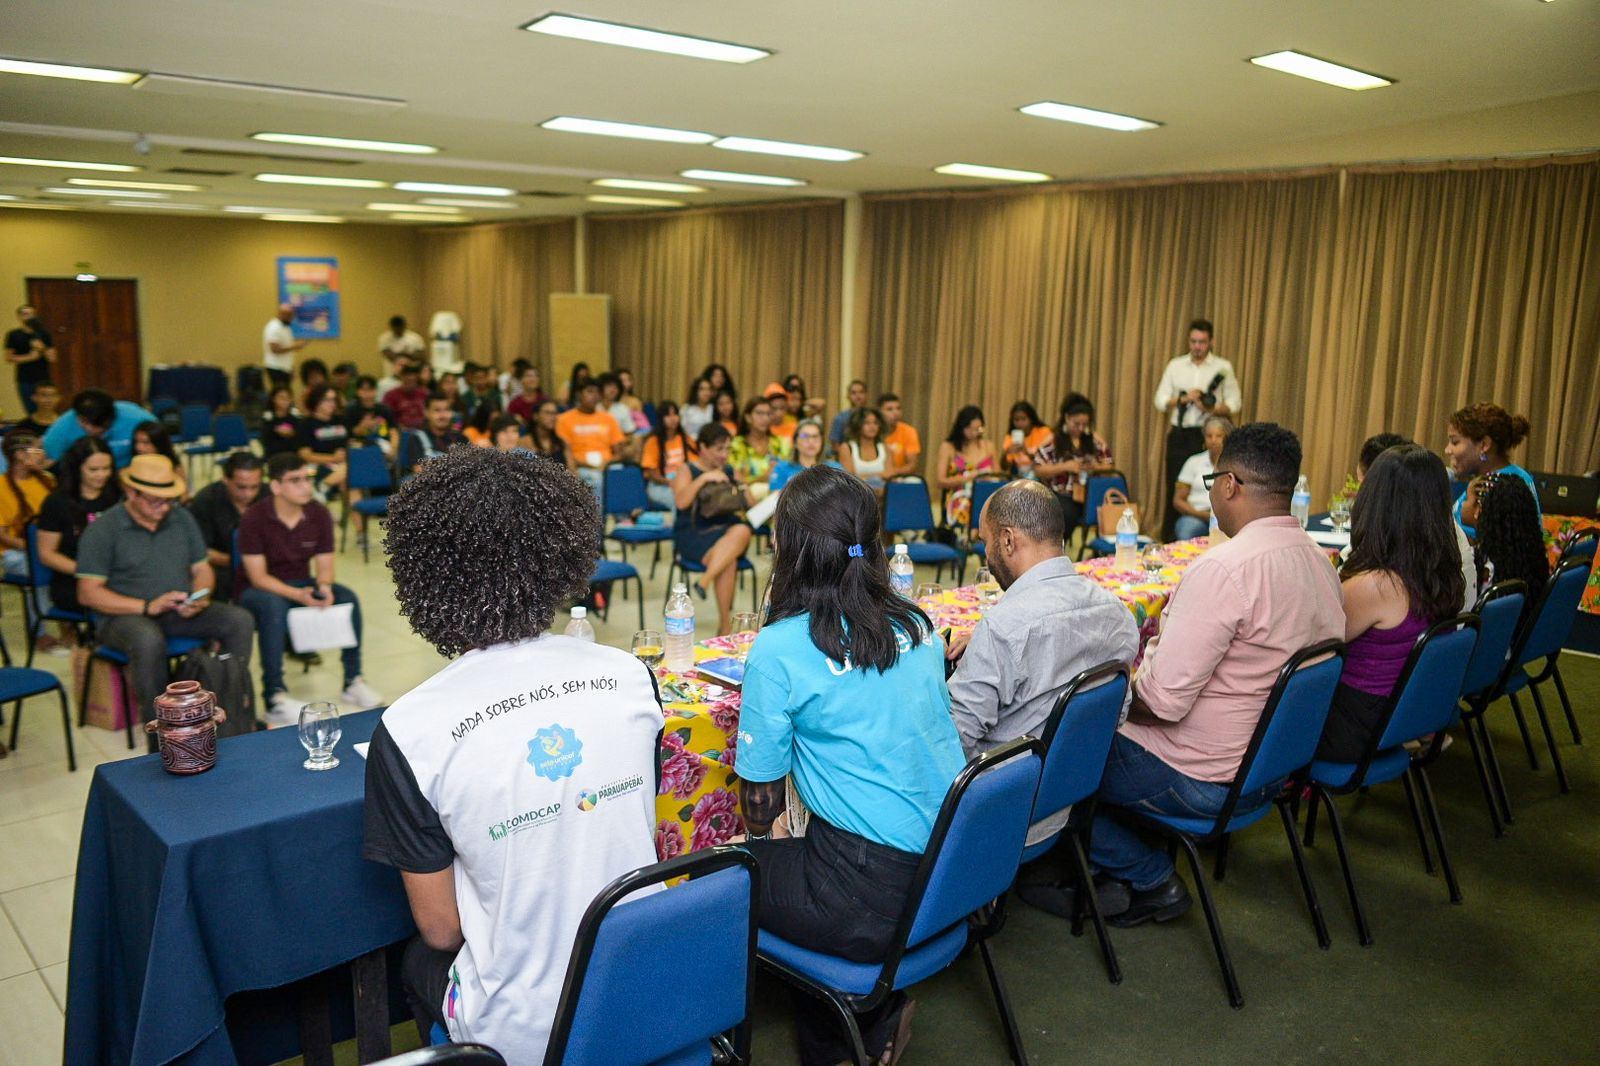 Encontro realizado pelo UNICEF, de 3 a 5 de agosto, em Belém-PA, vai debater os impactos das mudanças climáticas na infância, adolescência e juventude e propor novas estratégias para a região